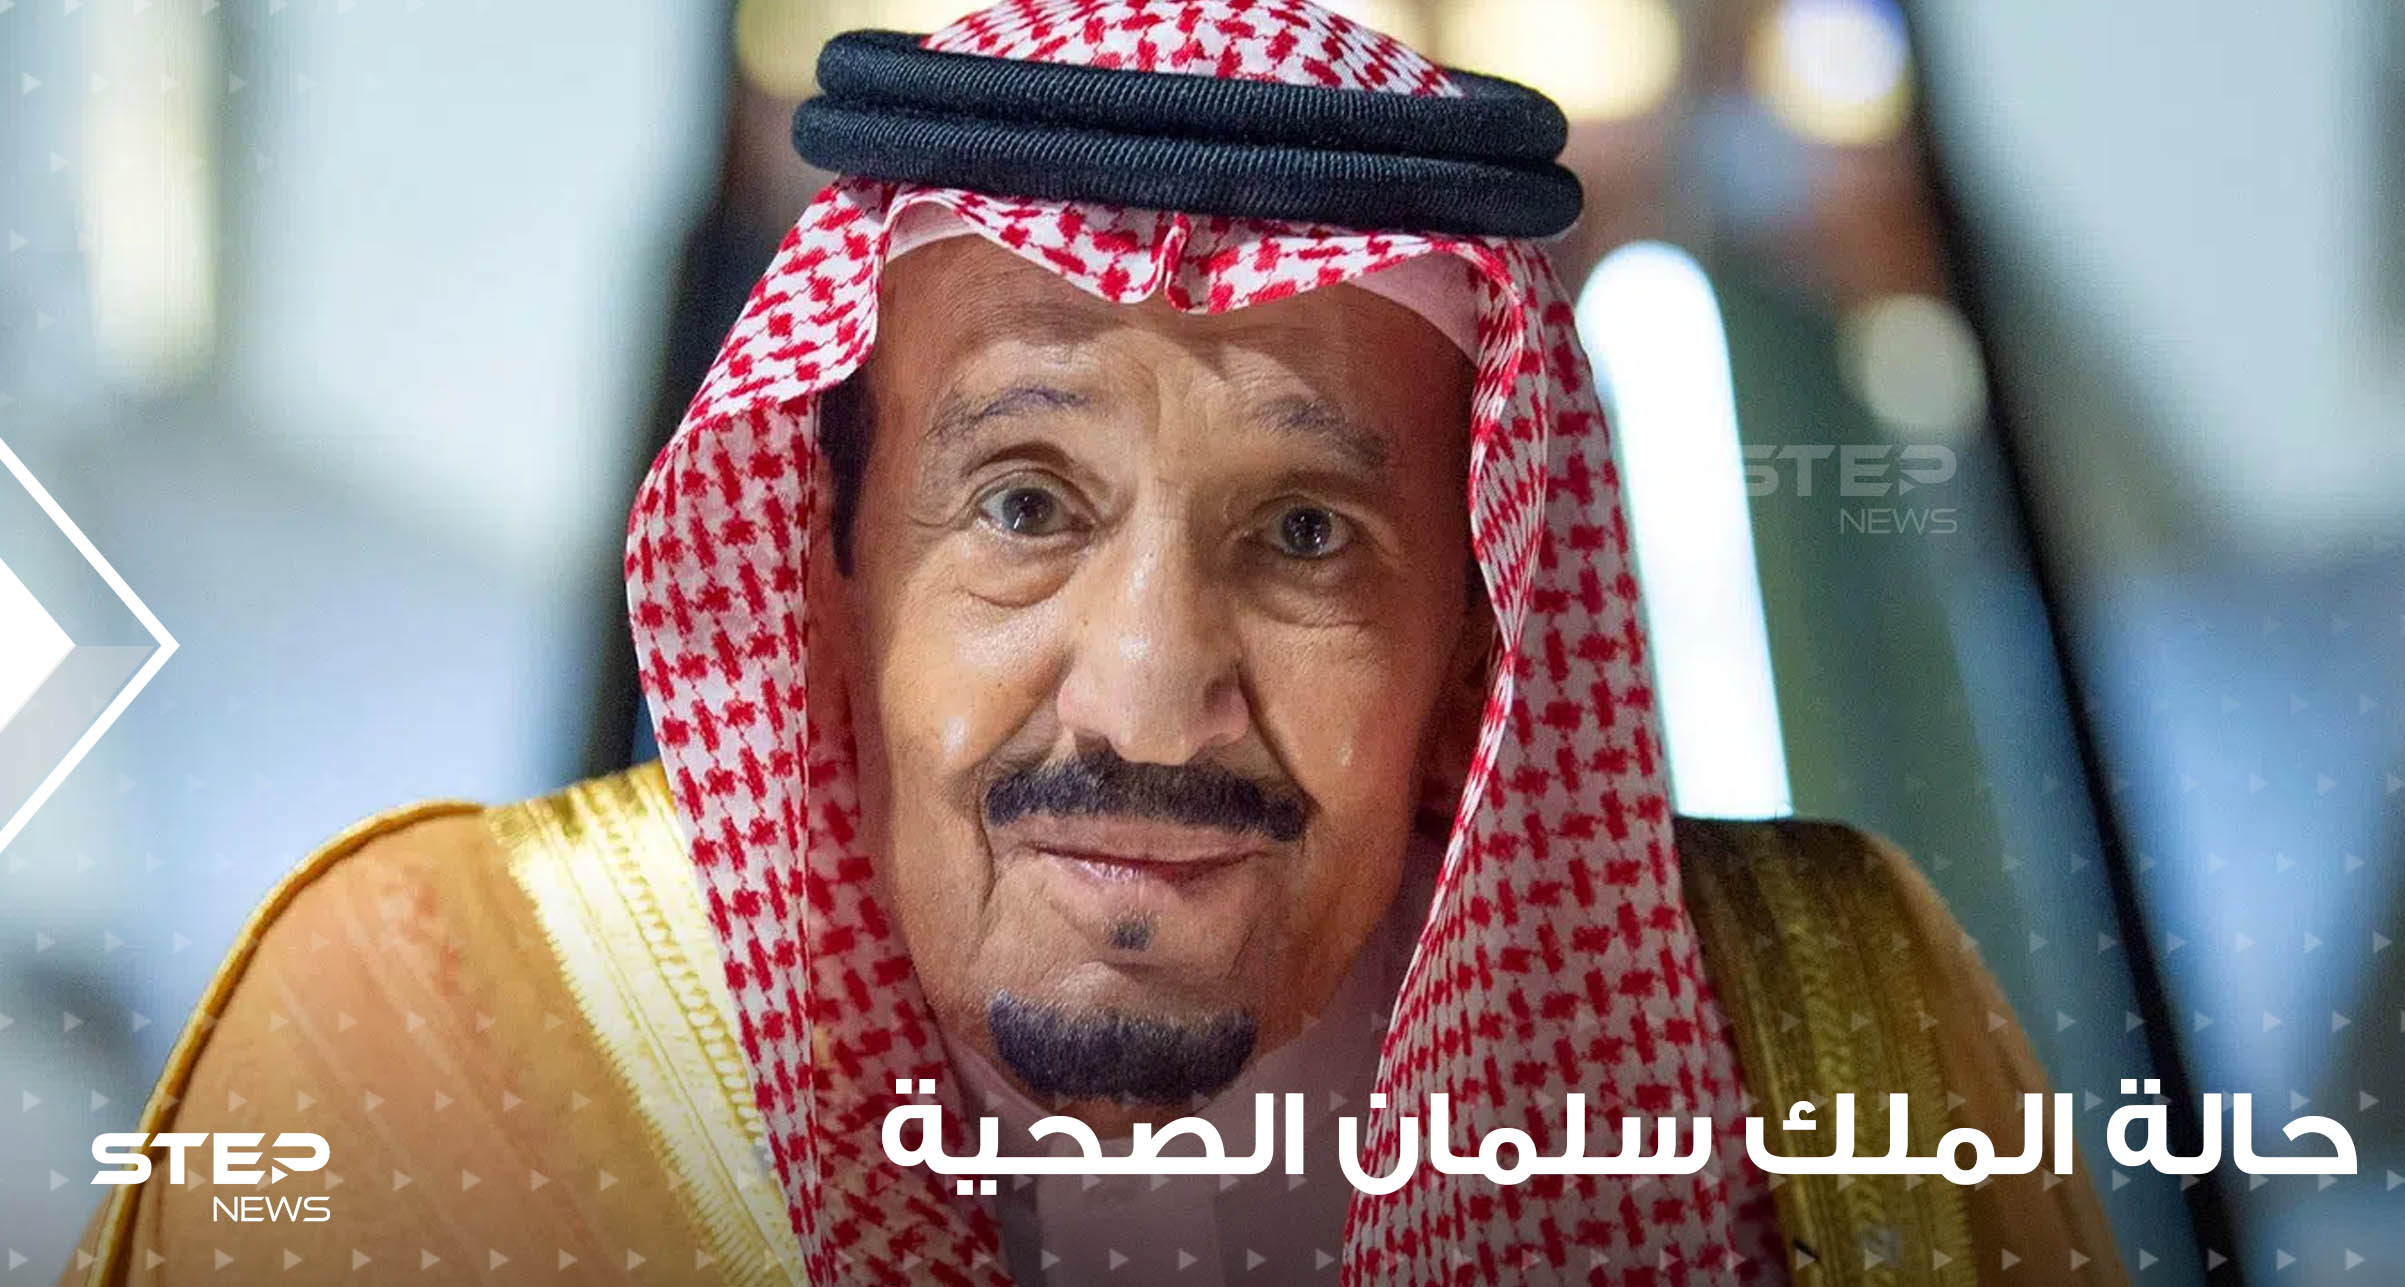 السعودية تكشف سبب دخول الملك سلمان إلى المستشفى ونتائج فحوصاته